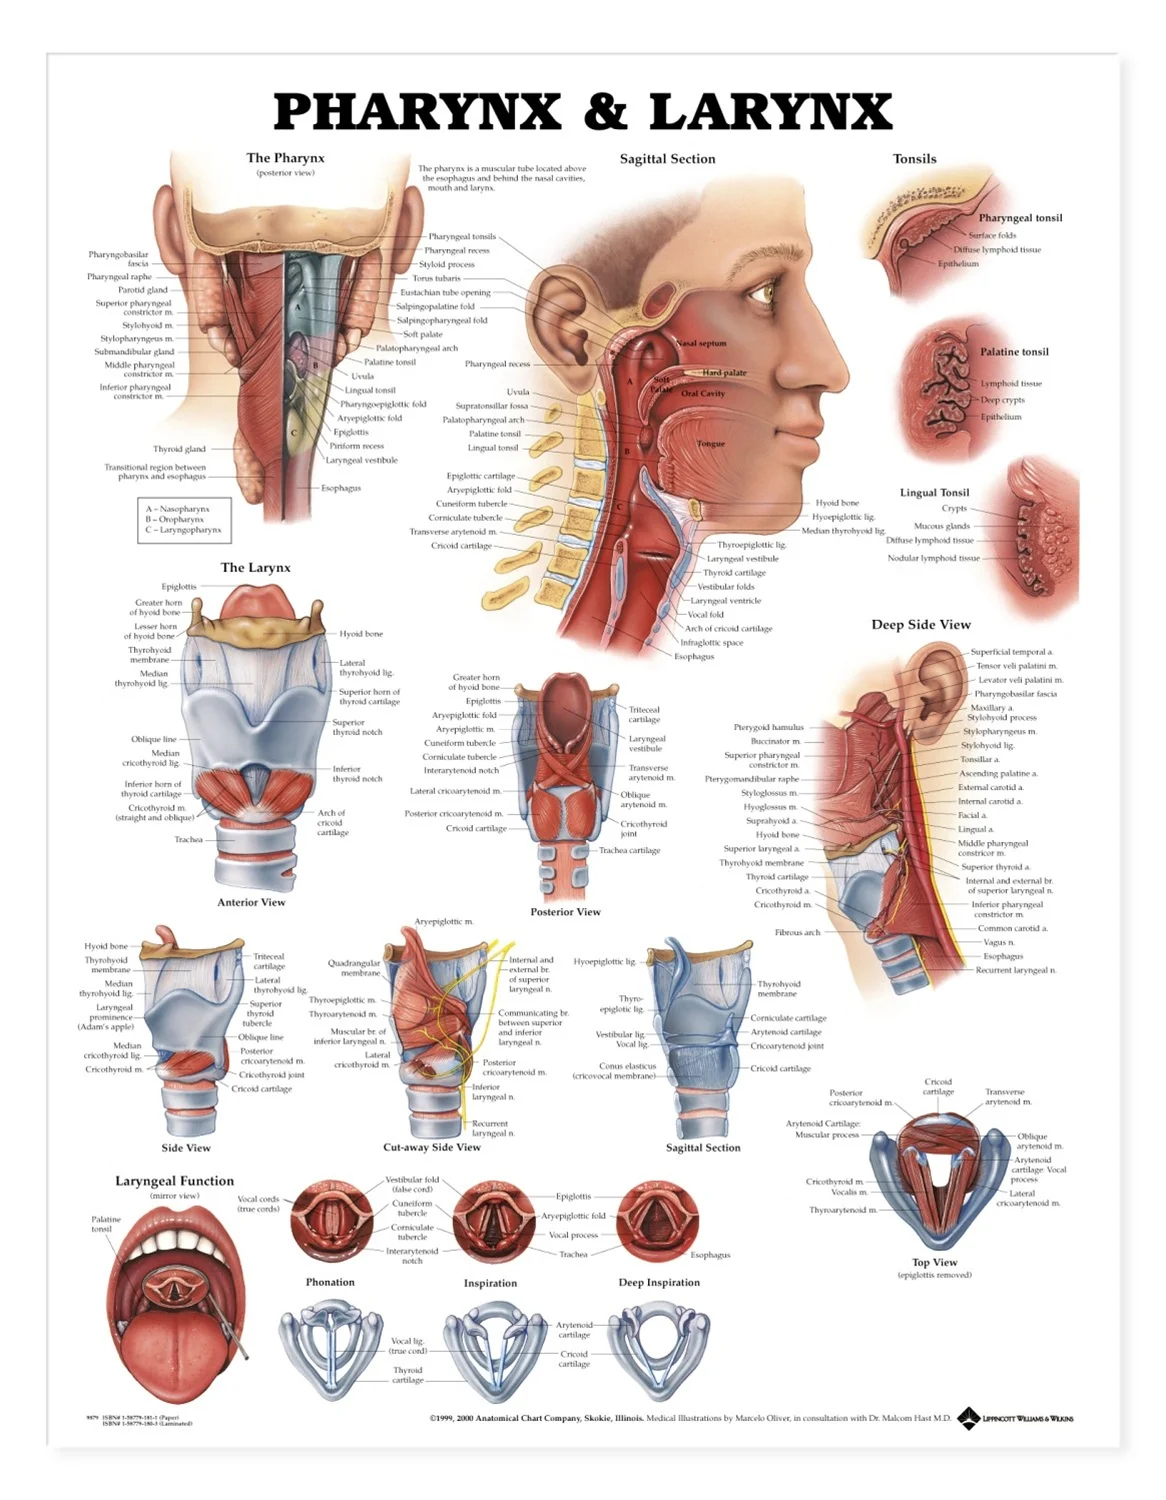 喉部模型及解说图片